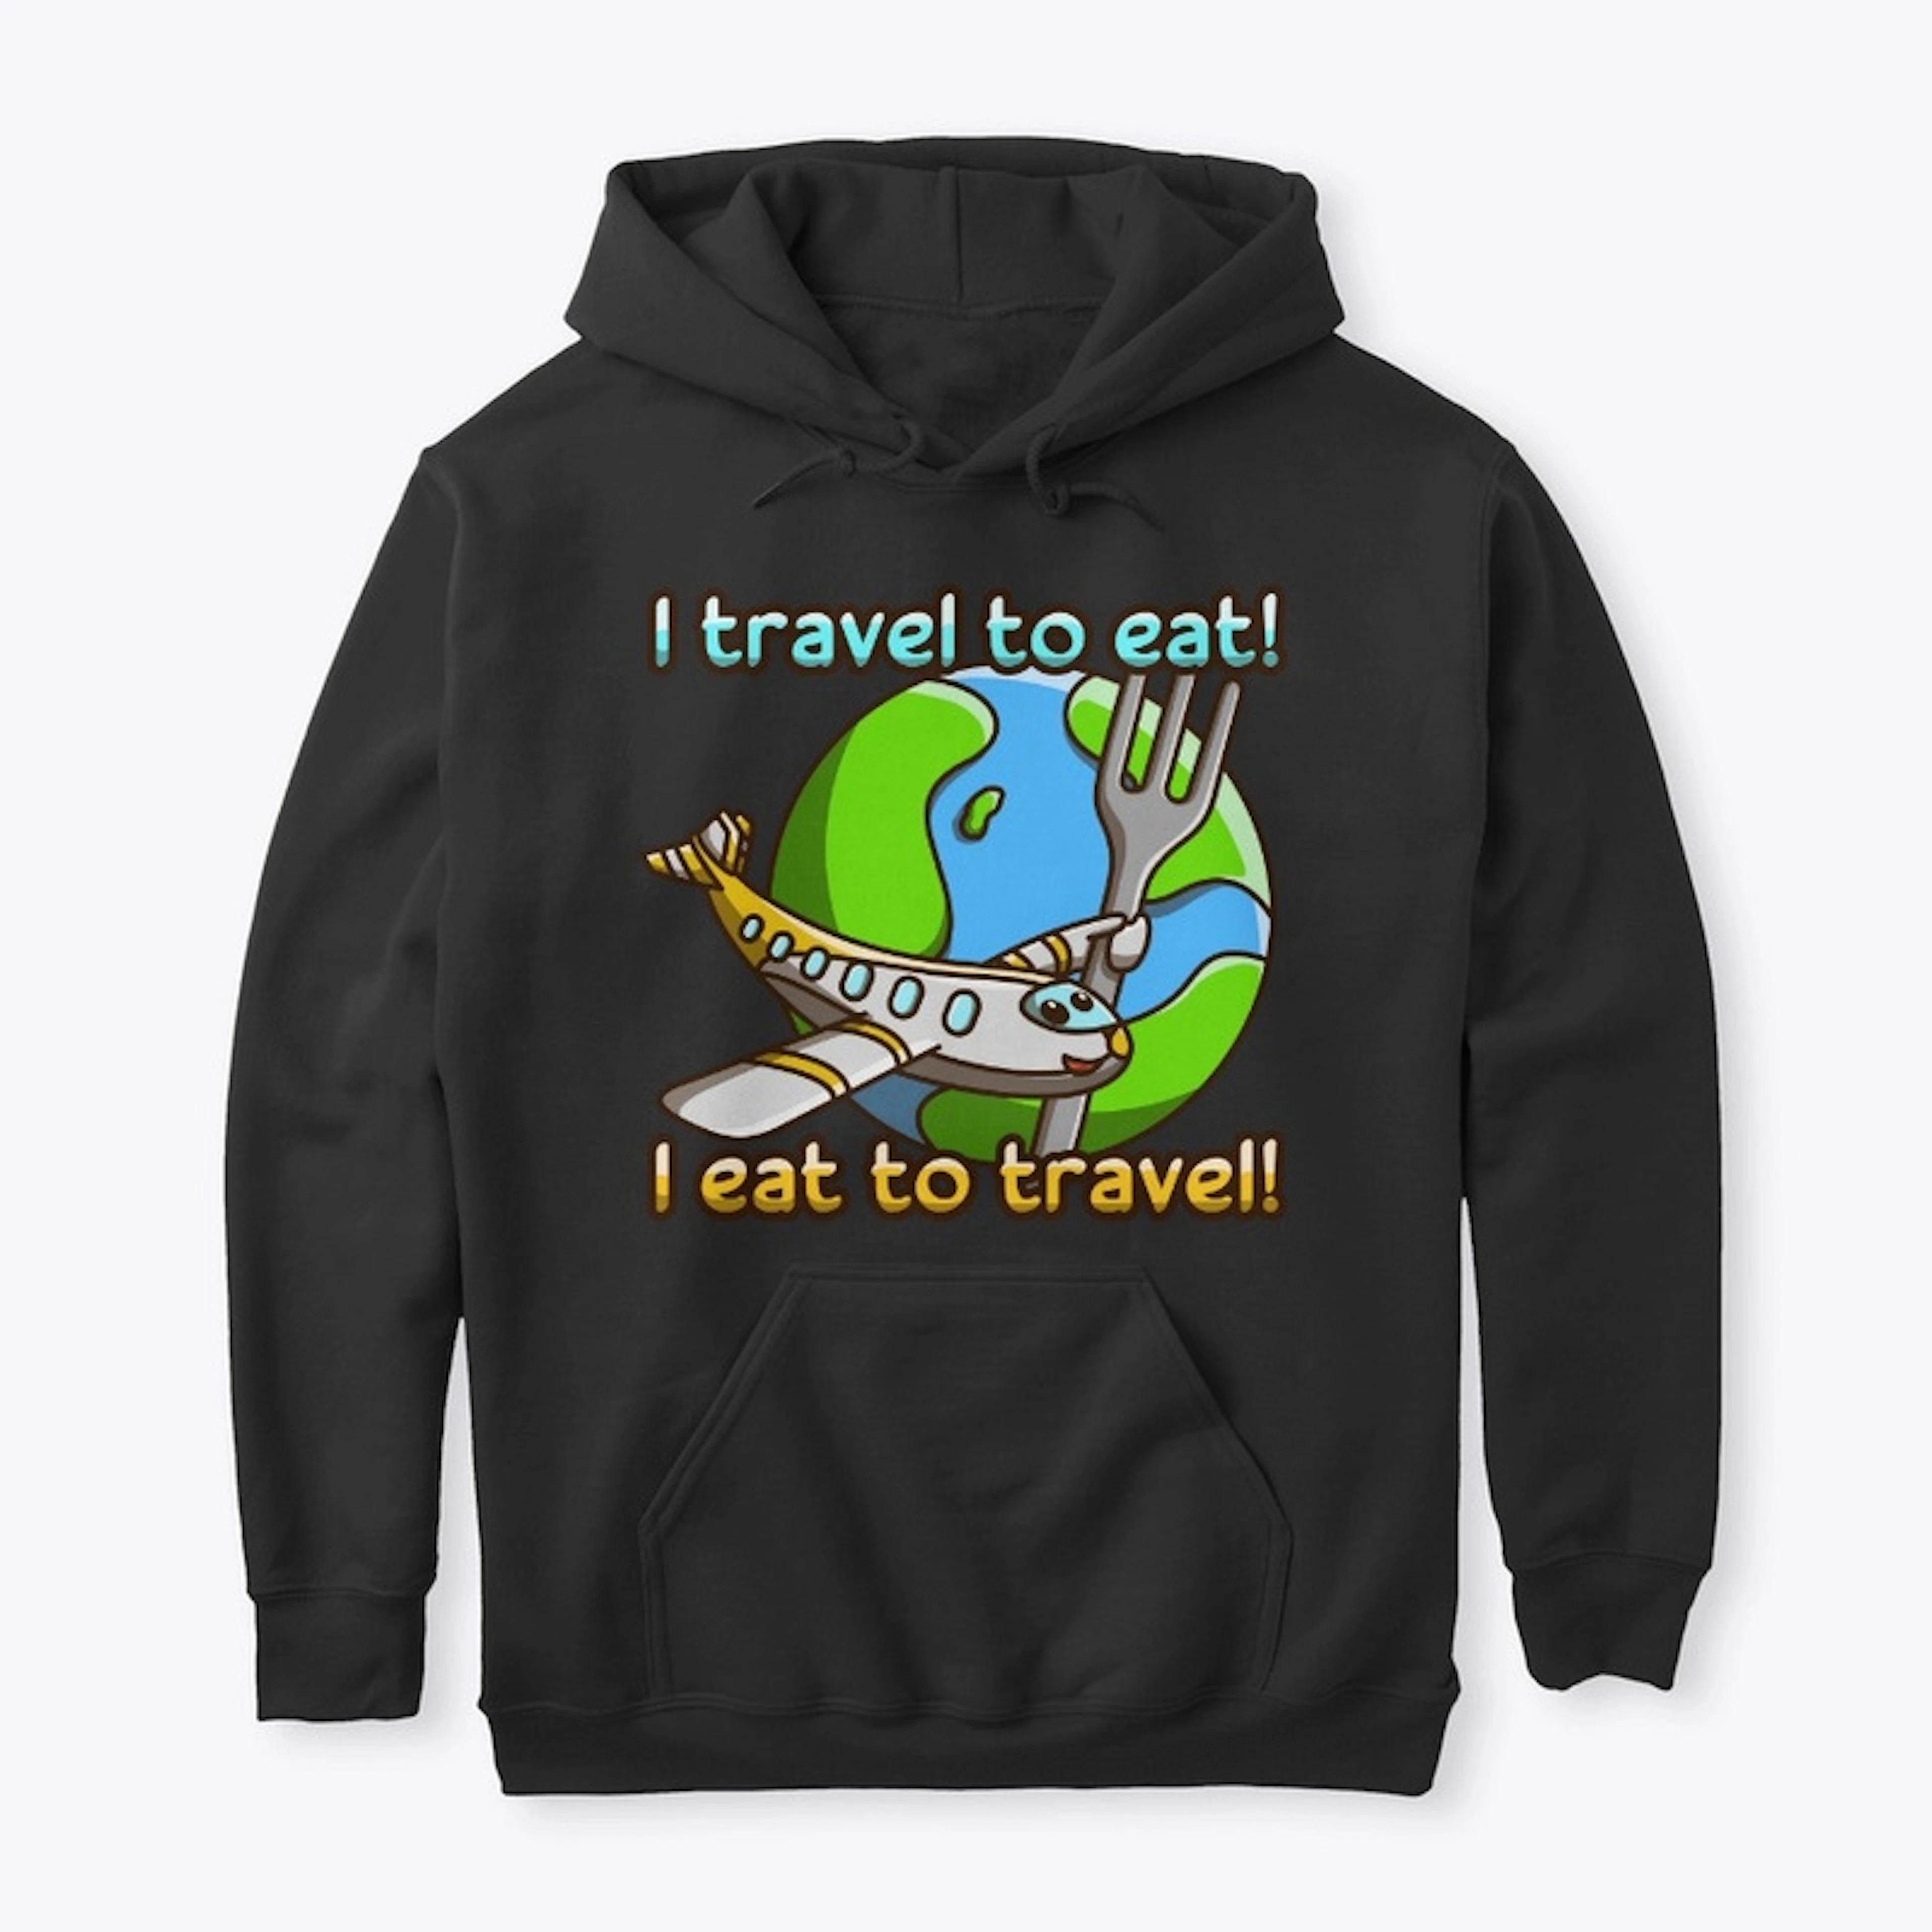 I travel to eat! I eat to travel!